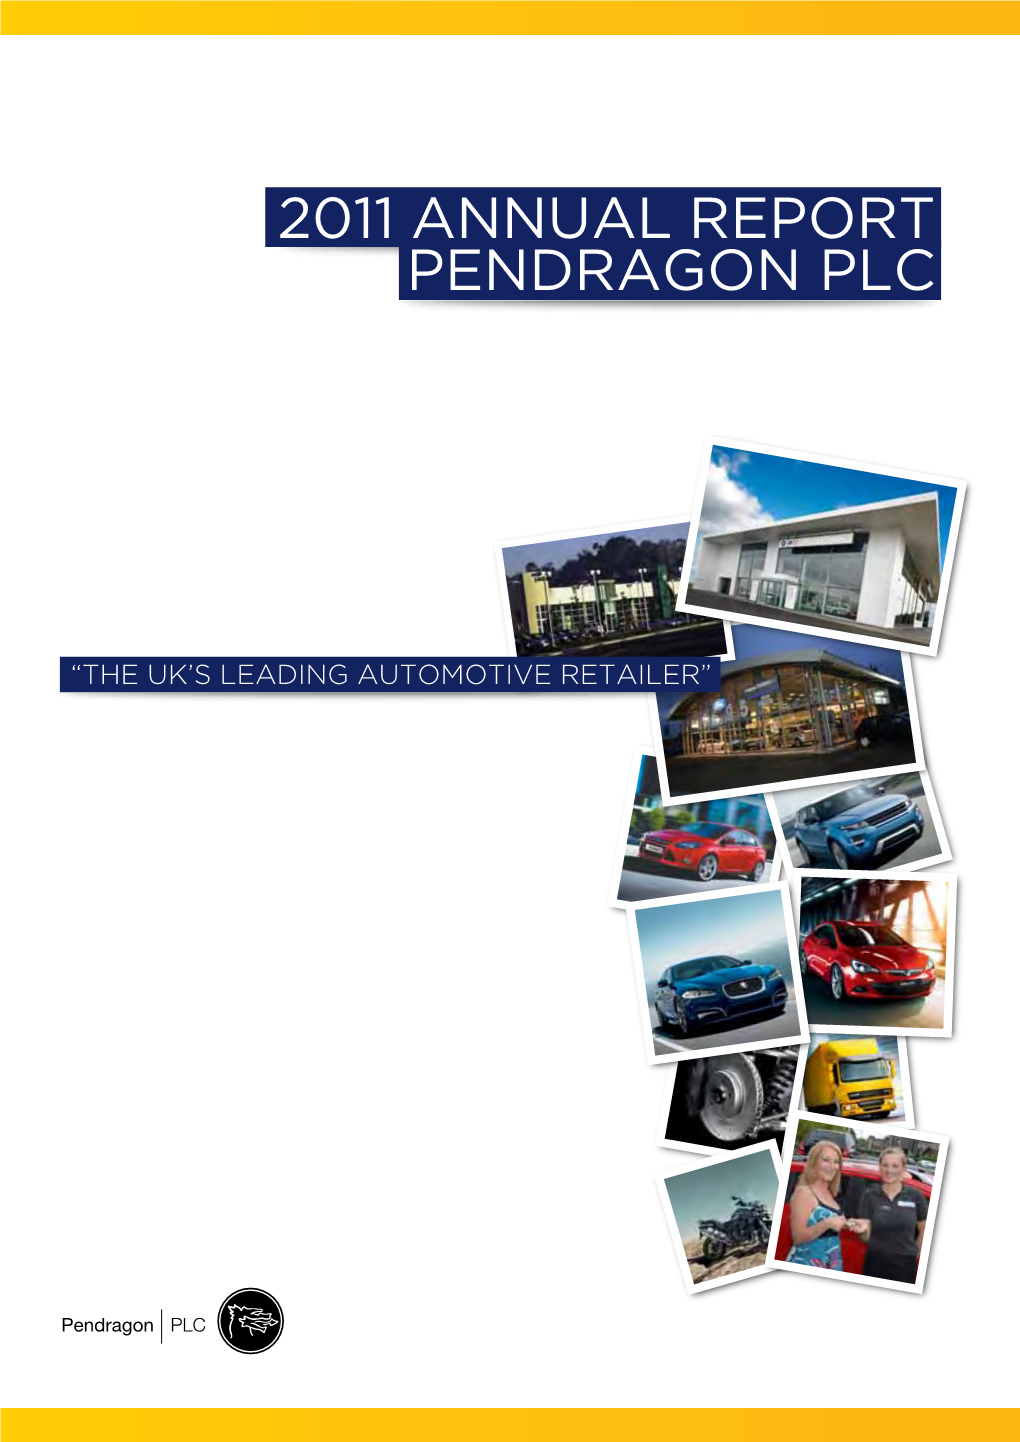 2011 Annual Report Pendragon Plc